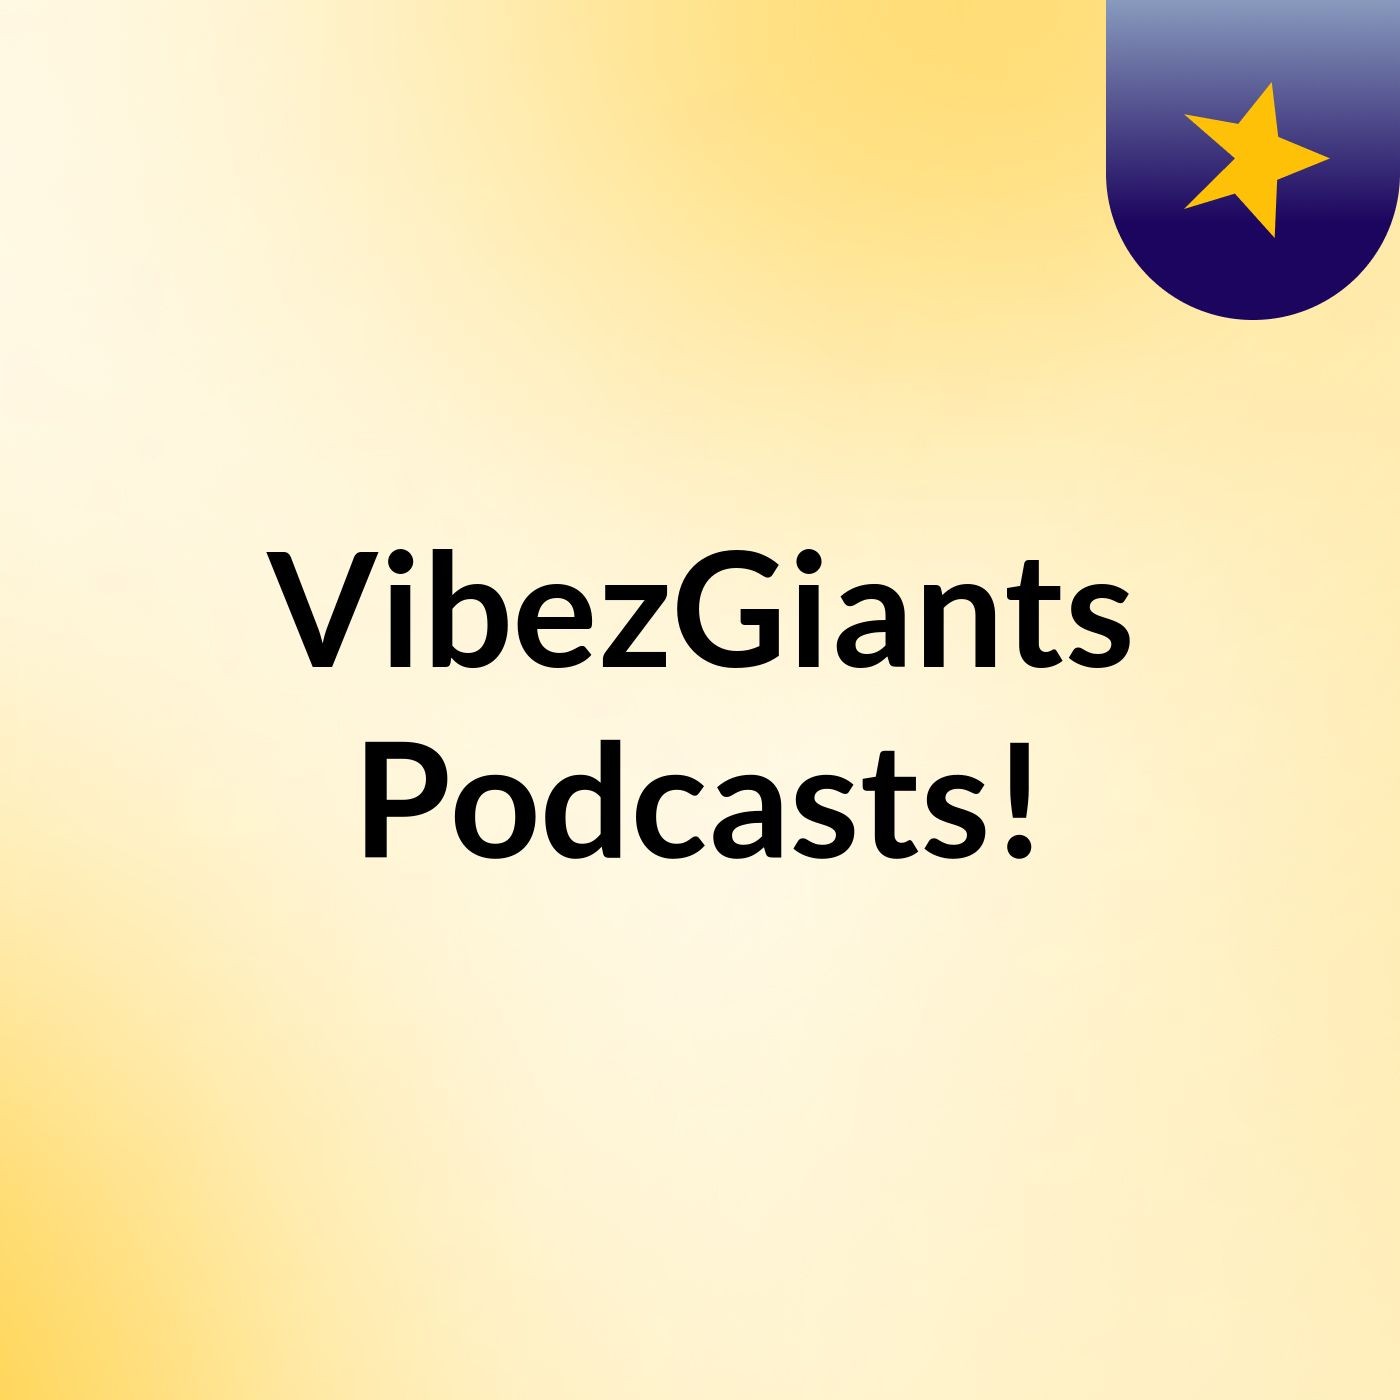 VibezGiants Podcasts!